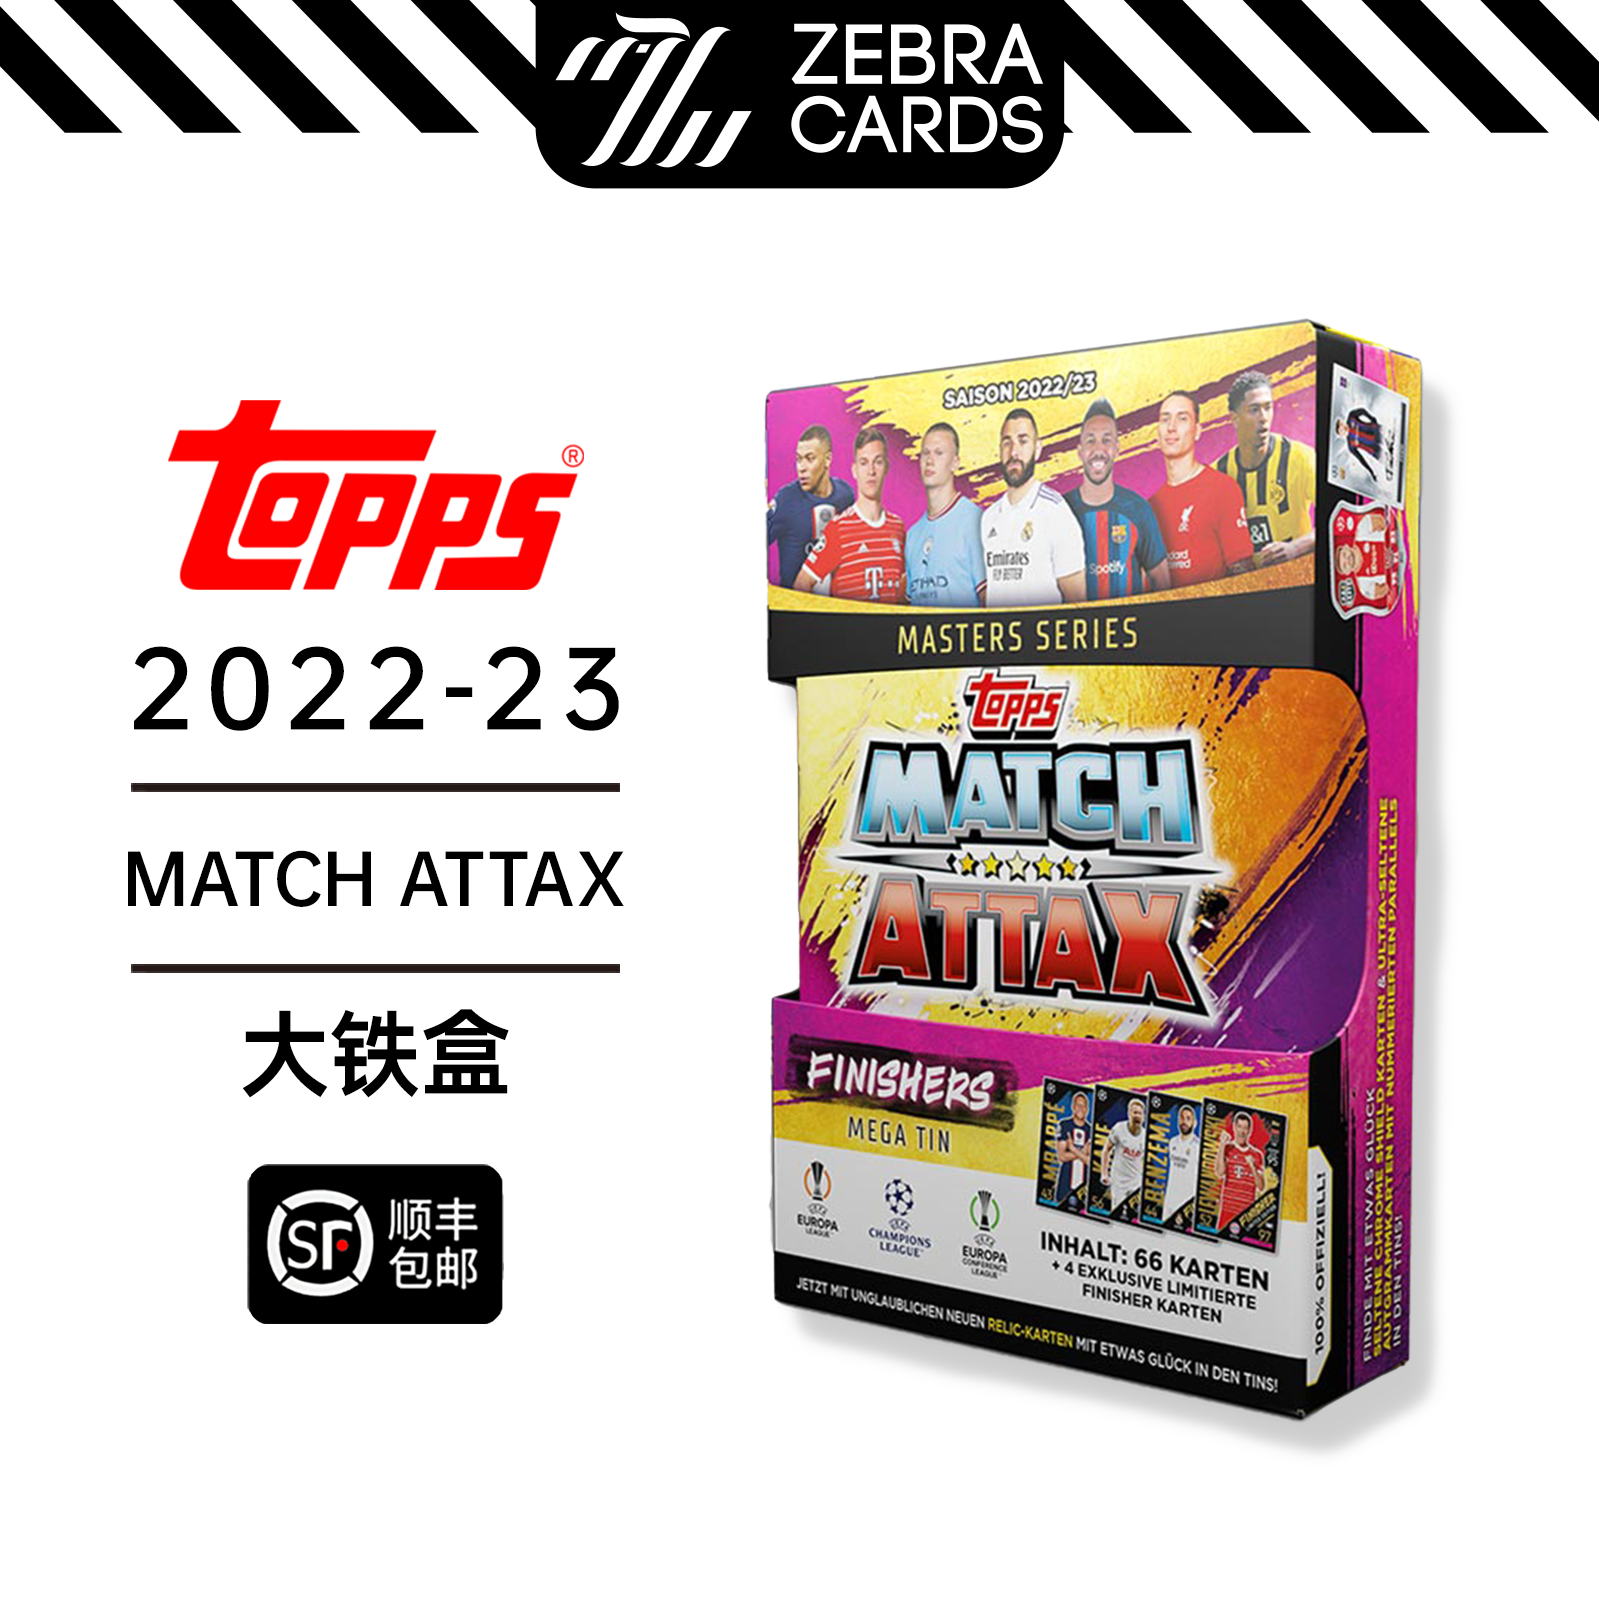 TOPPS 22-23 MATCH ATTAX 欧联欧冠球星卡 Finishers 大铁盒 紫色